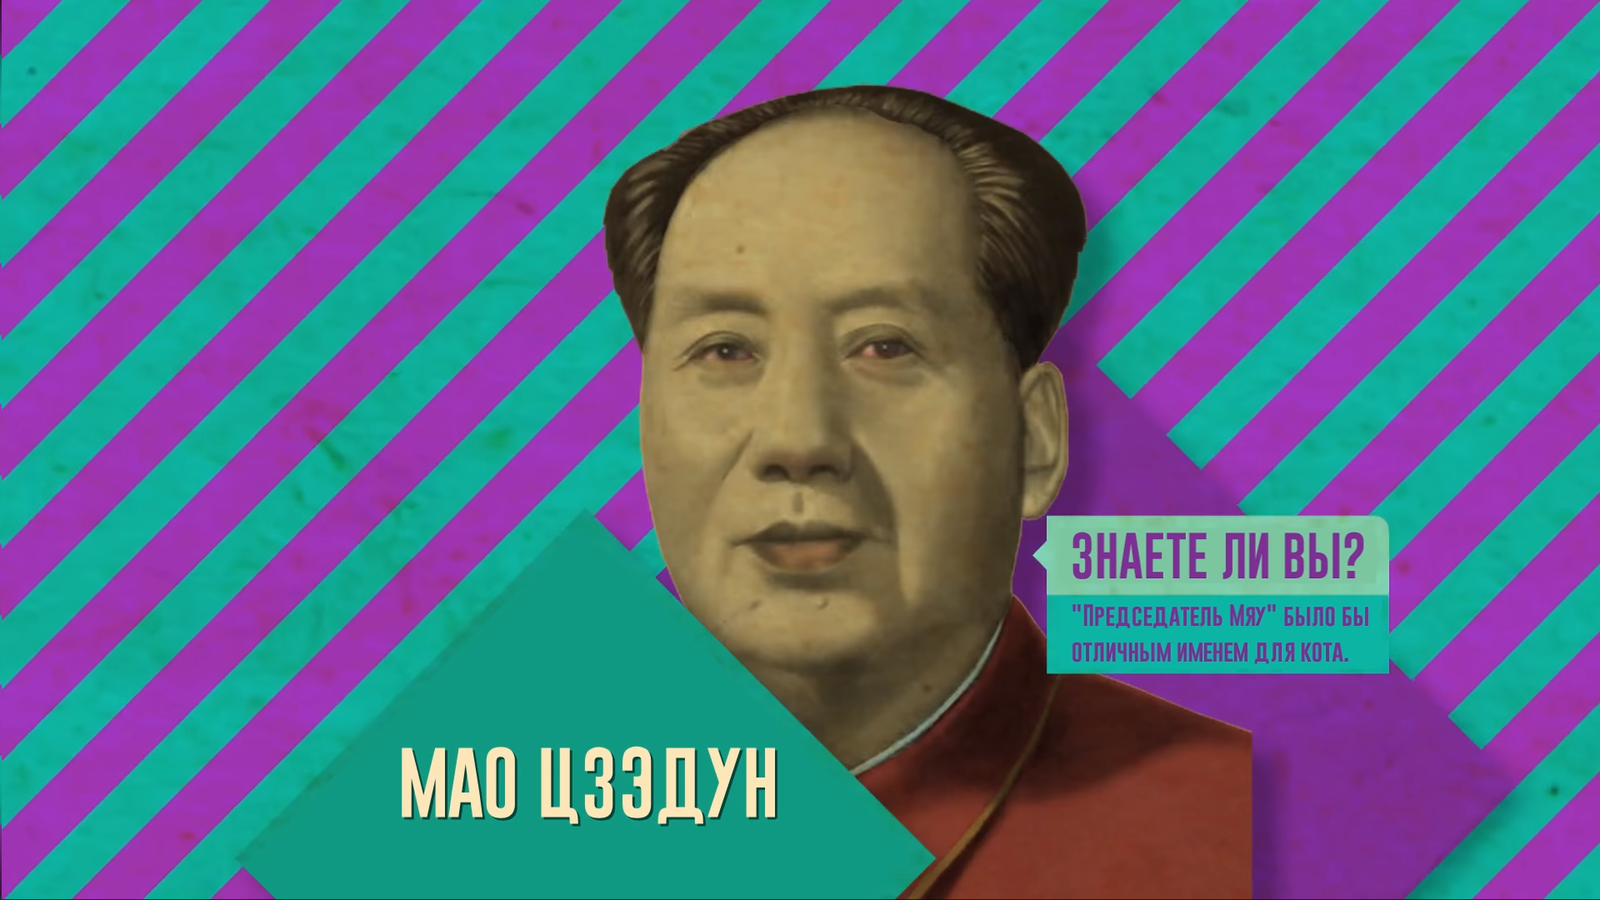 Chairman Mao - Mao zedong, Humor, Red eyes